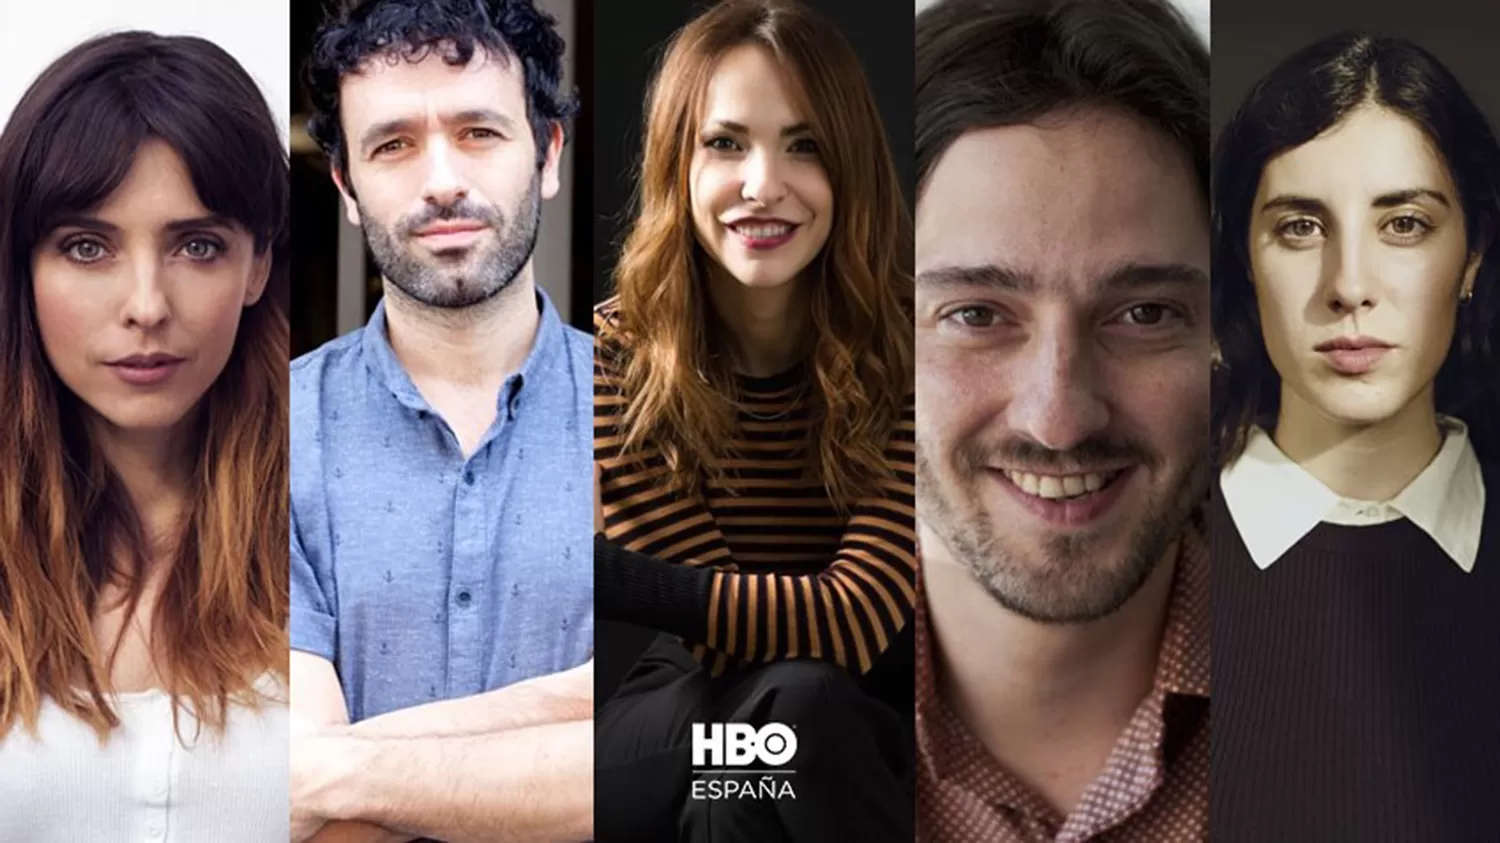 Confinamiento: HBO estrena “En casa”